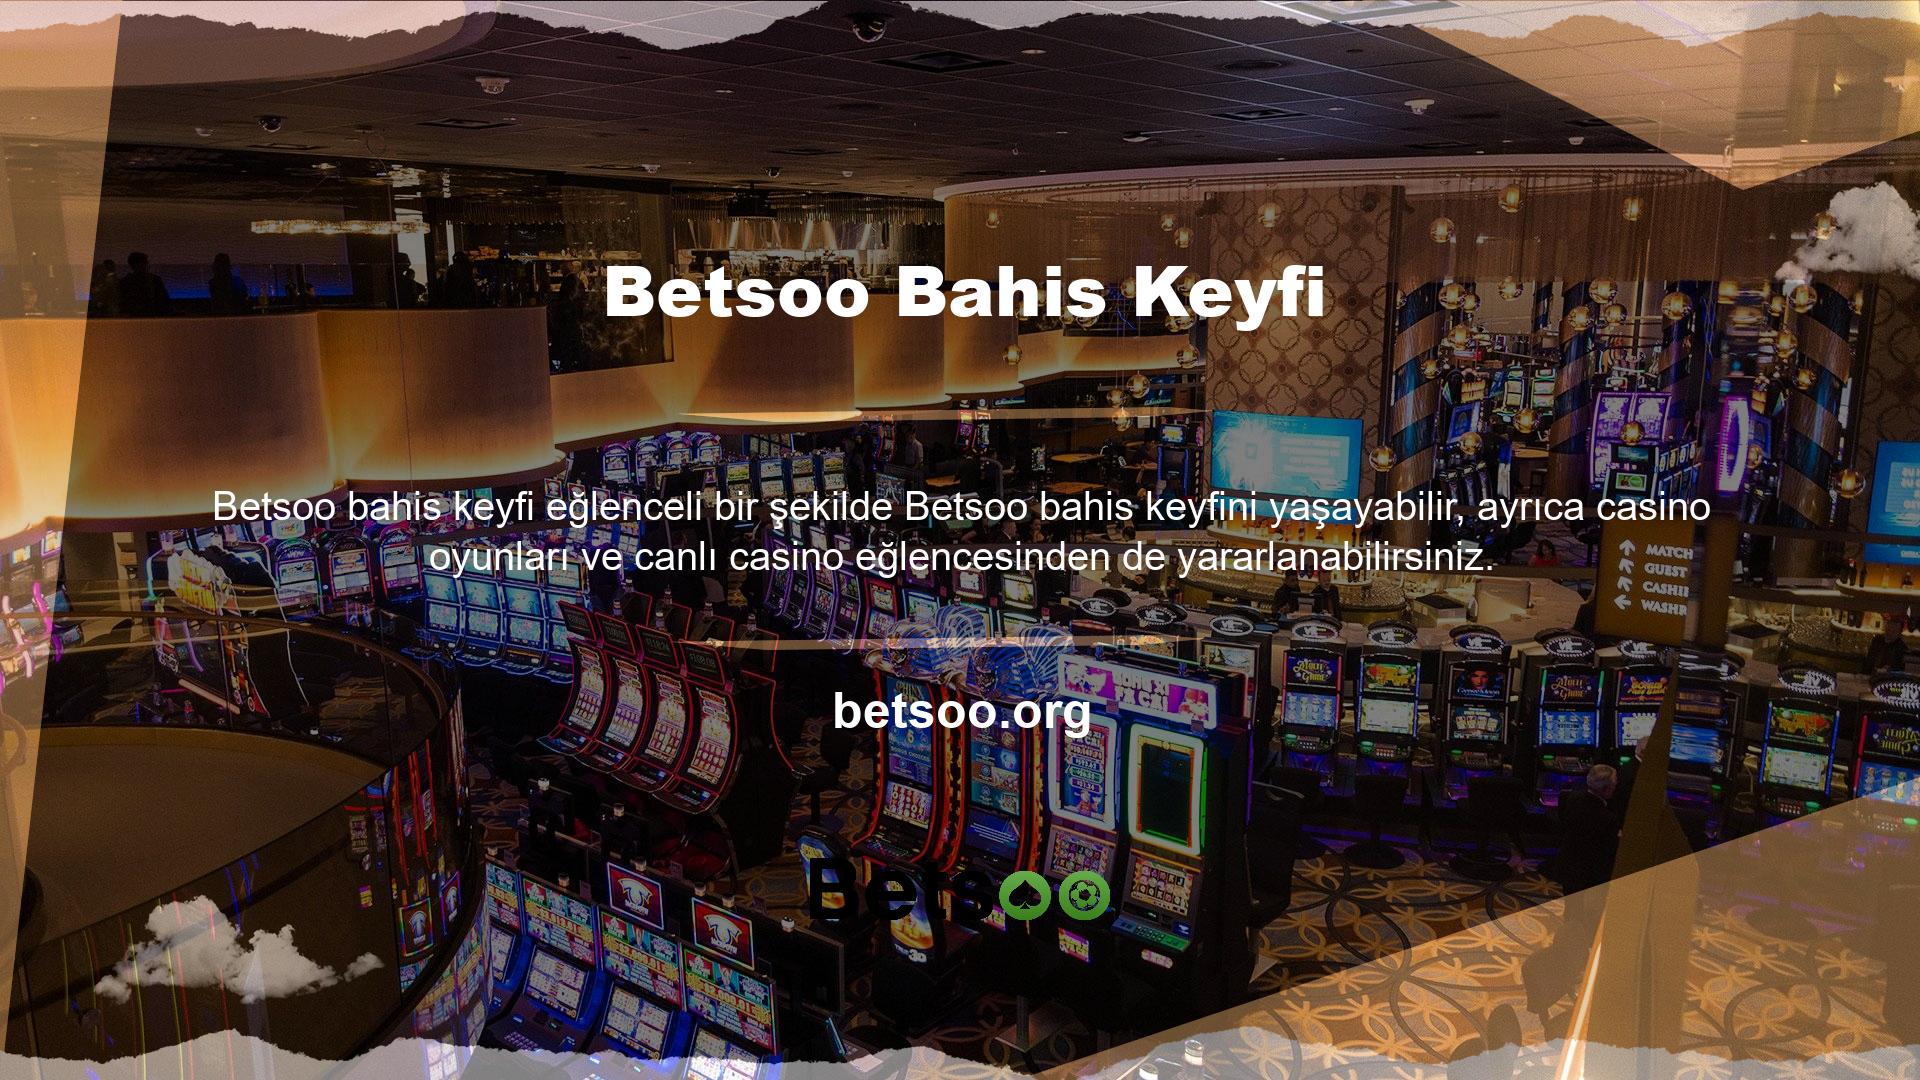 Bu web sitesi üyelere çeşitli casino oyunları oynama ve canlı casino aksiyonunu deneyimleme fırsatı sunuyor